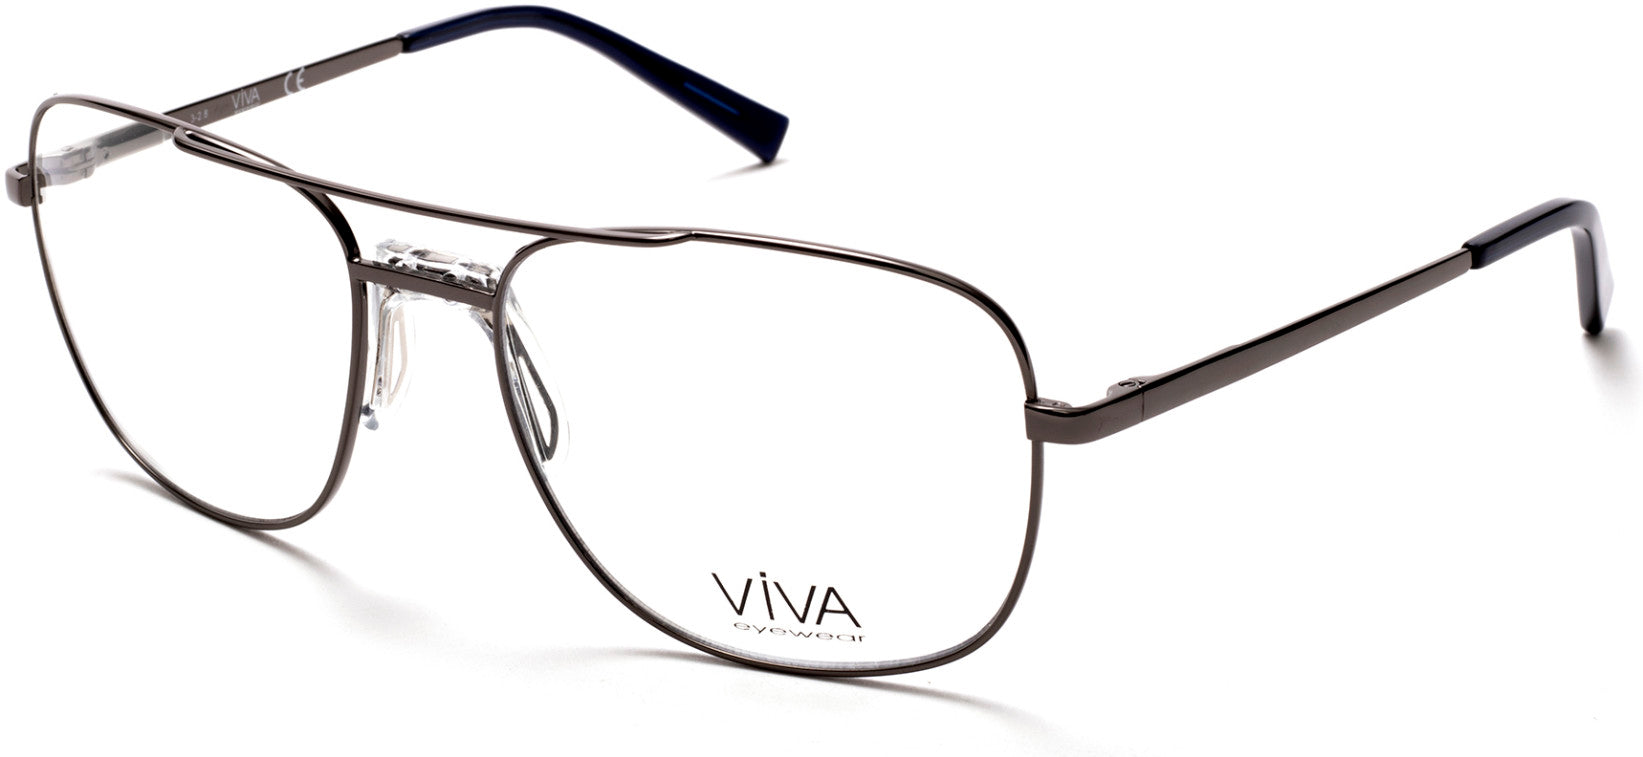 Viva VV4037 Pilot Eyeglasses 008-008 - Shiny Gunmetal